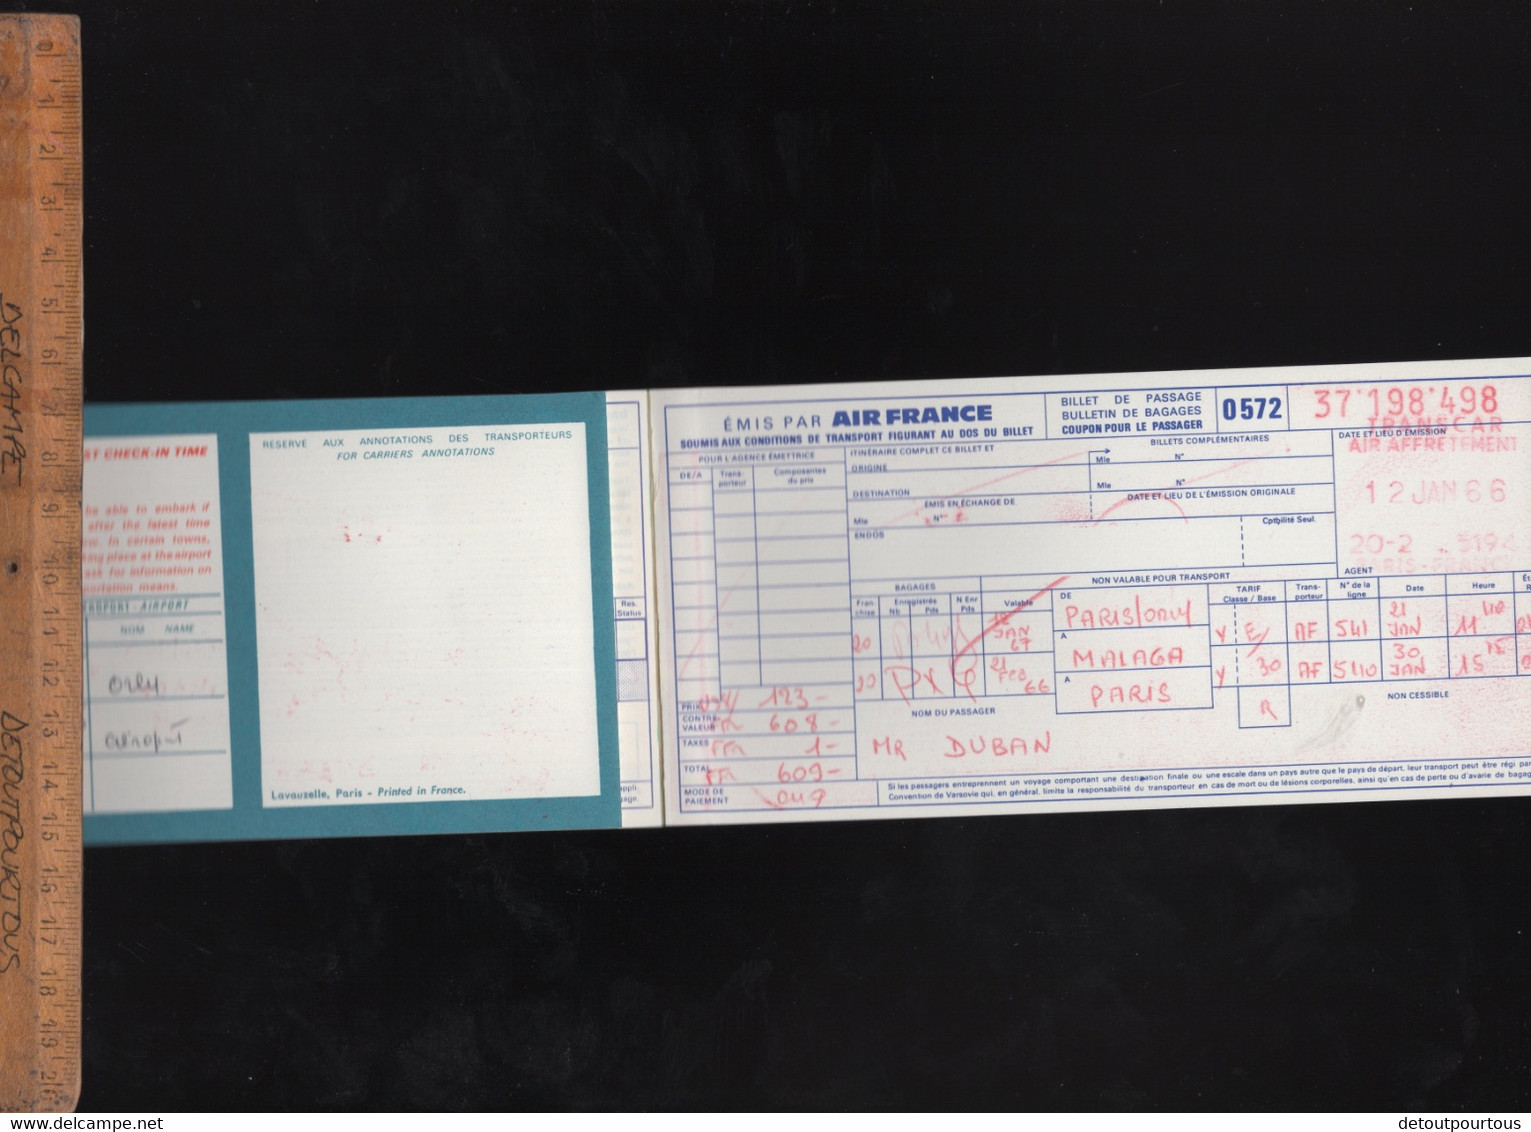 Billet D'avion AIR FRANCE Airways Ticket D'embarquement Aéroport De Paris Orly Pour Malaga Spain 1966 - Europa